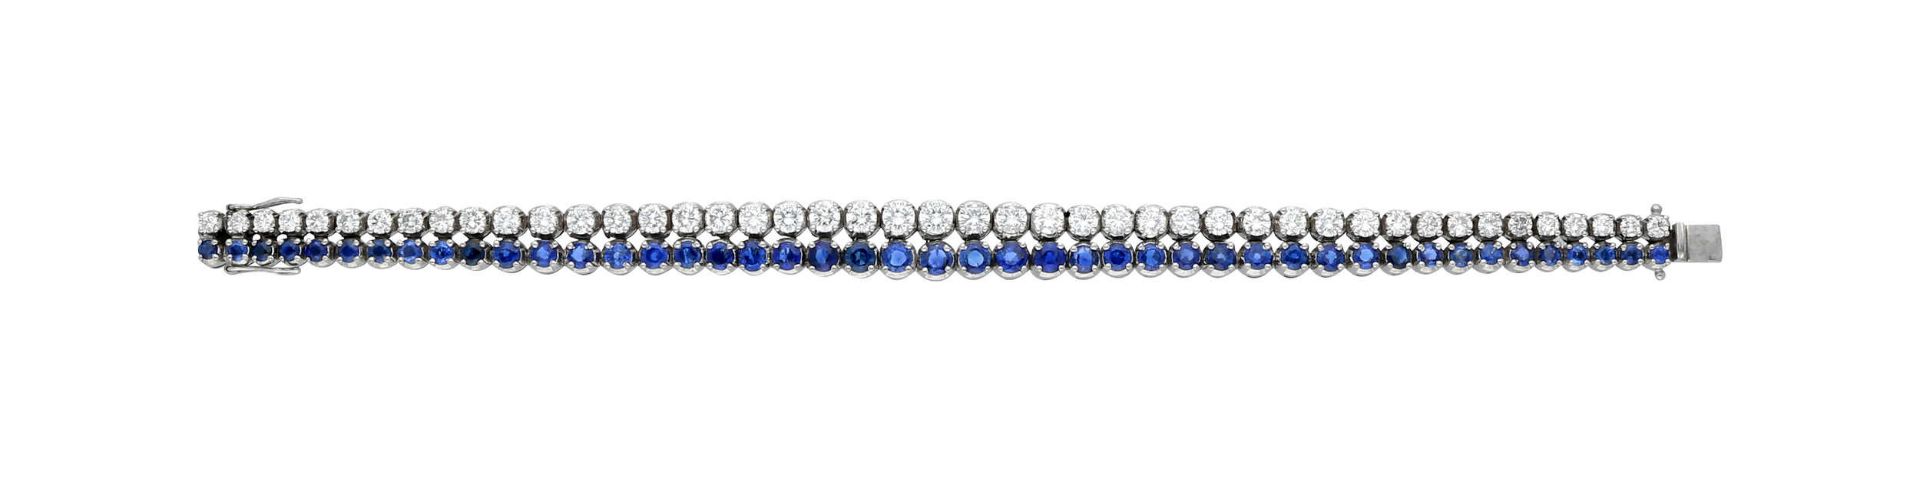 Saphir-Brillant-Bracelet, qualitätsvolles Modell in Weissgold 18K, das bewegliche Bracelet